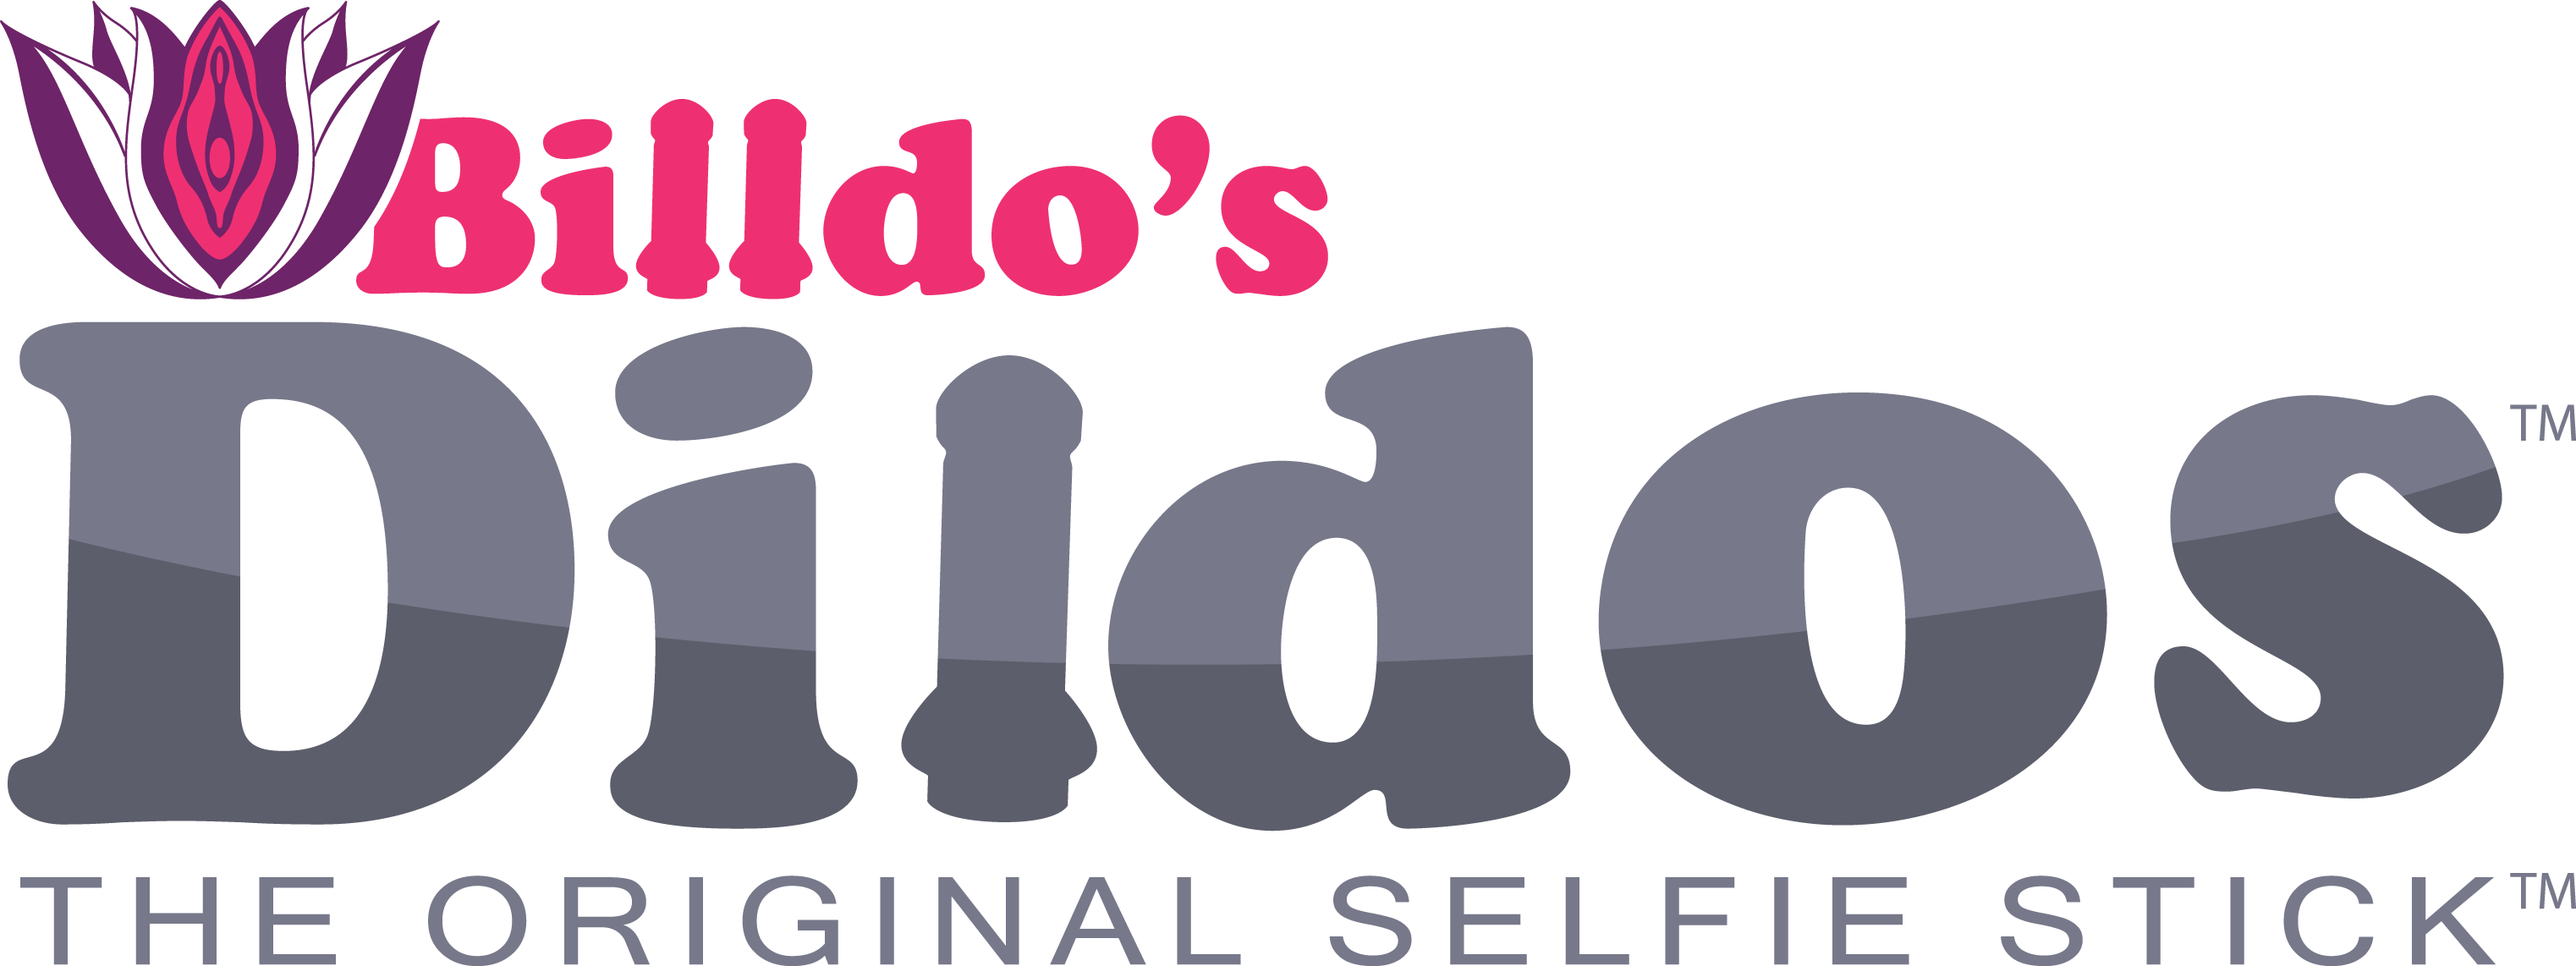 Billdo's Dildos